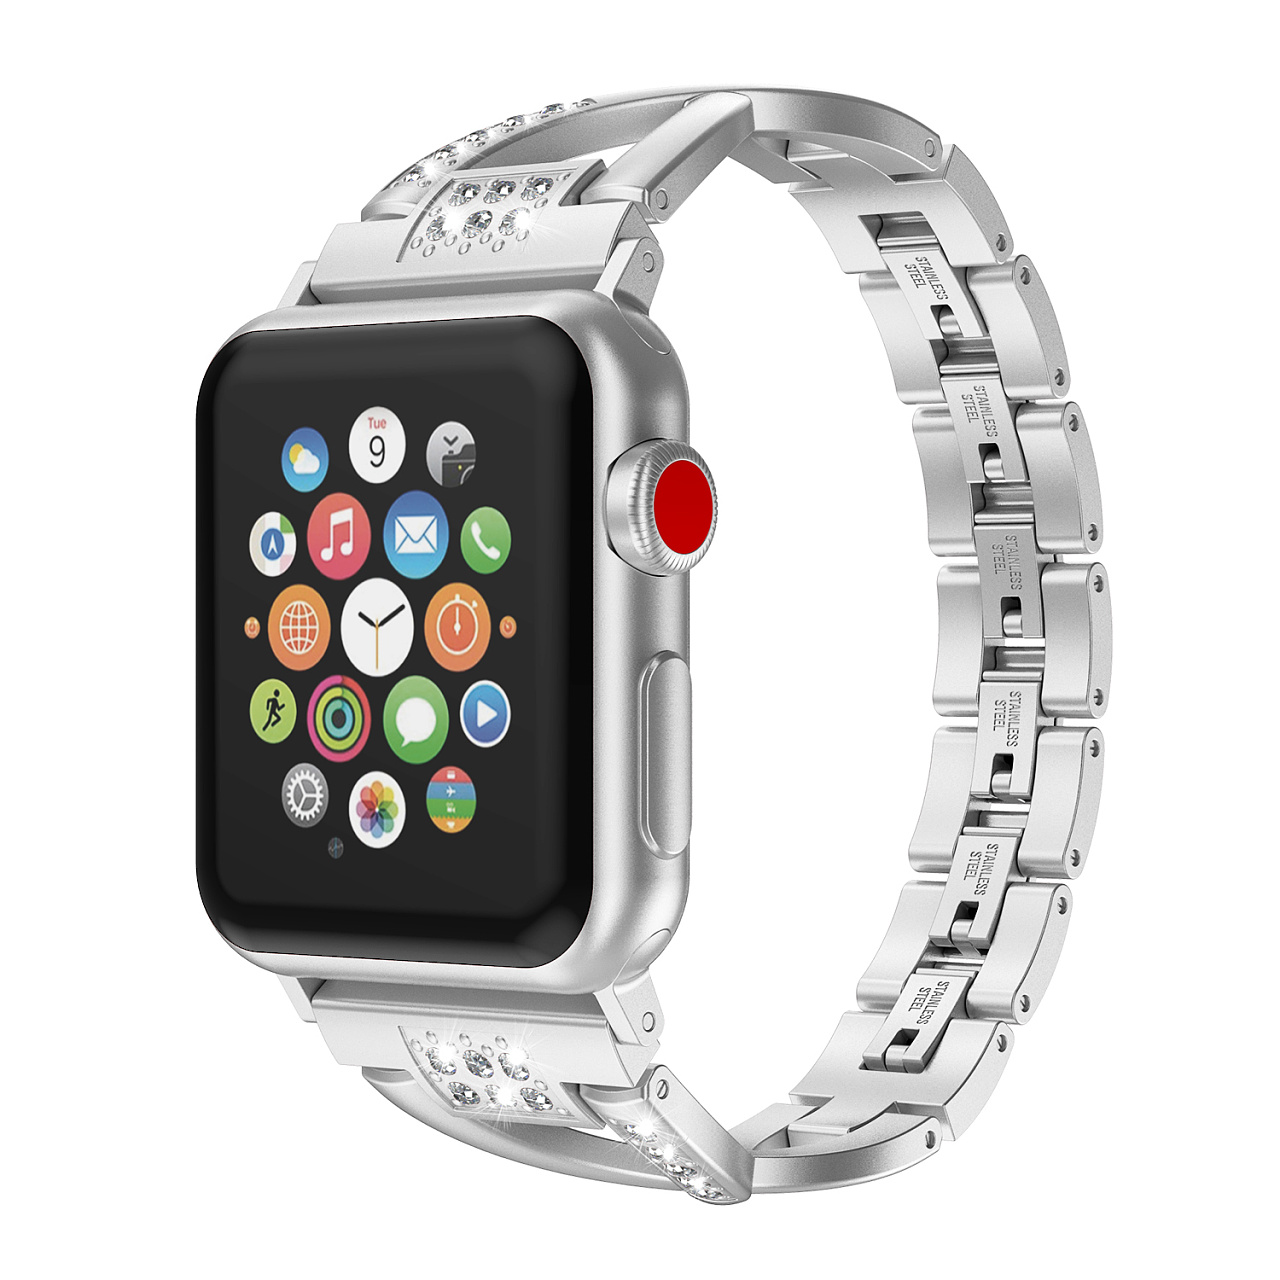 5 款自定义表盘 让你的 Apple Watch 效率翻倍 - 知乎